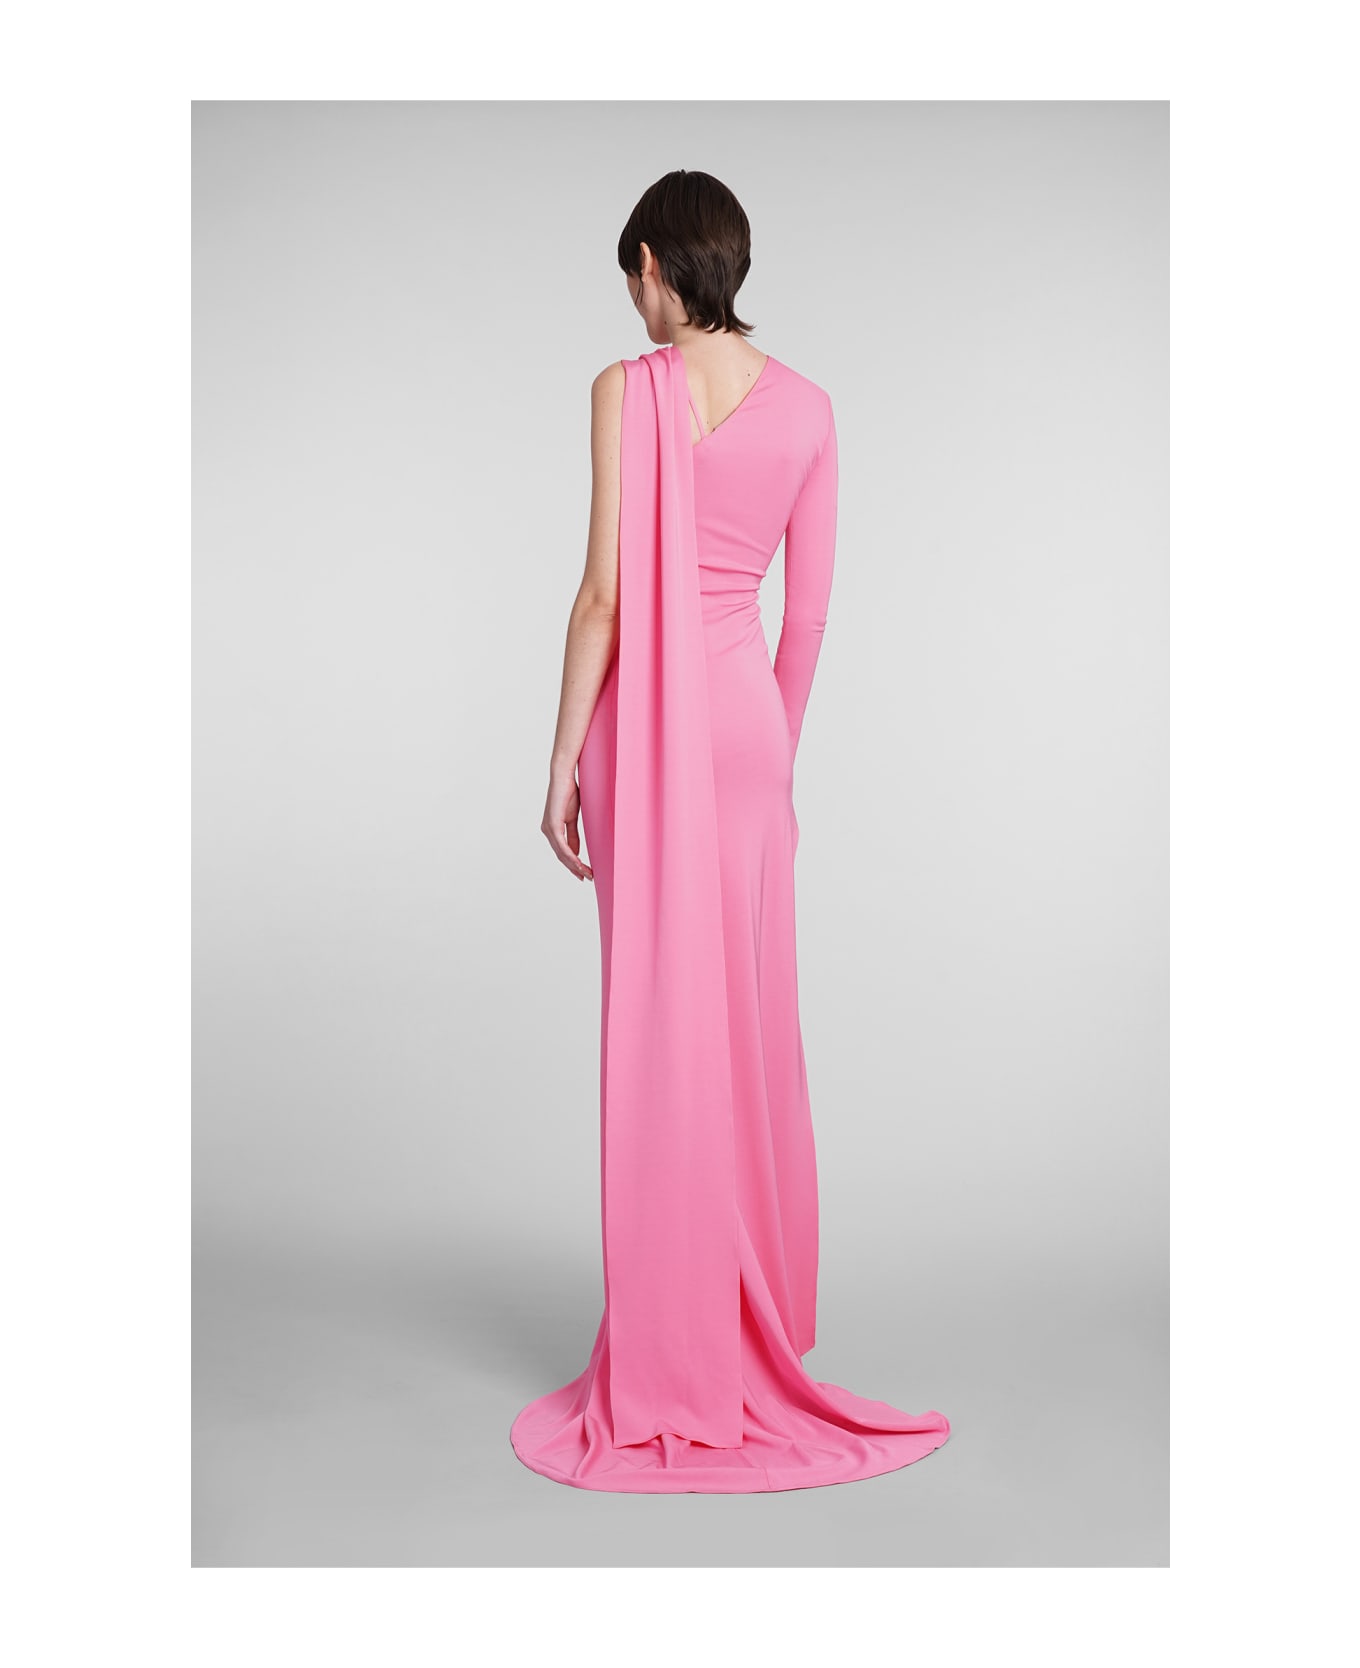 David Koma Dress In Rose-pink Viscose - rose-pink